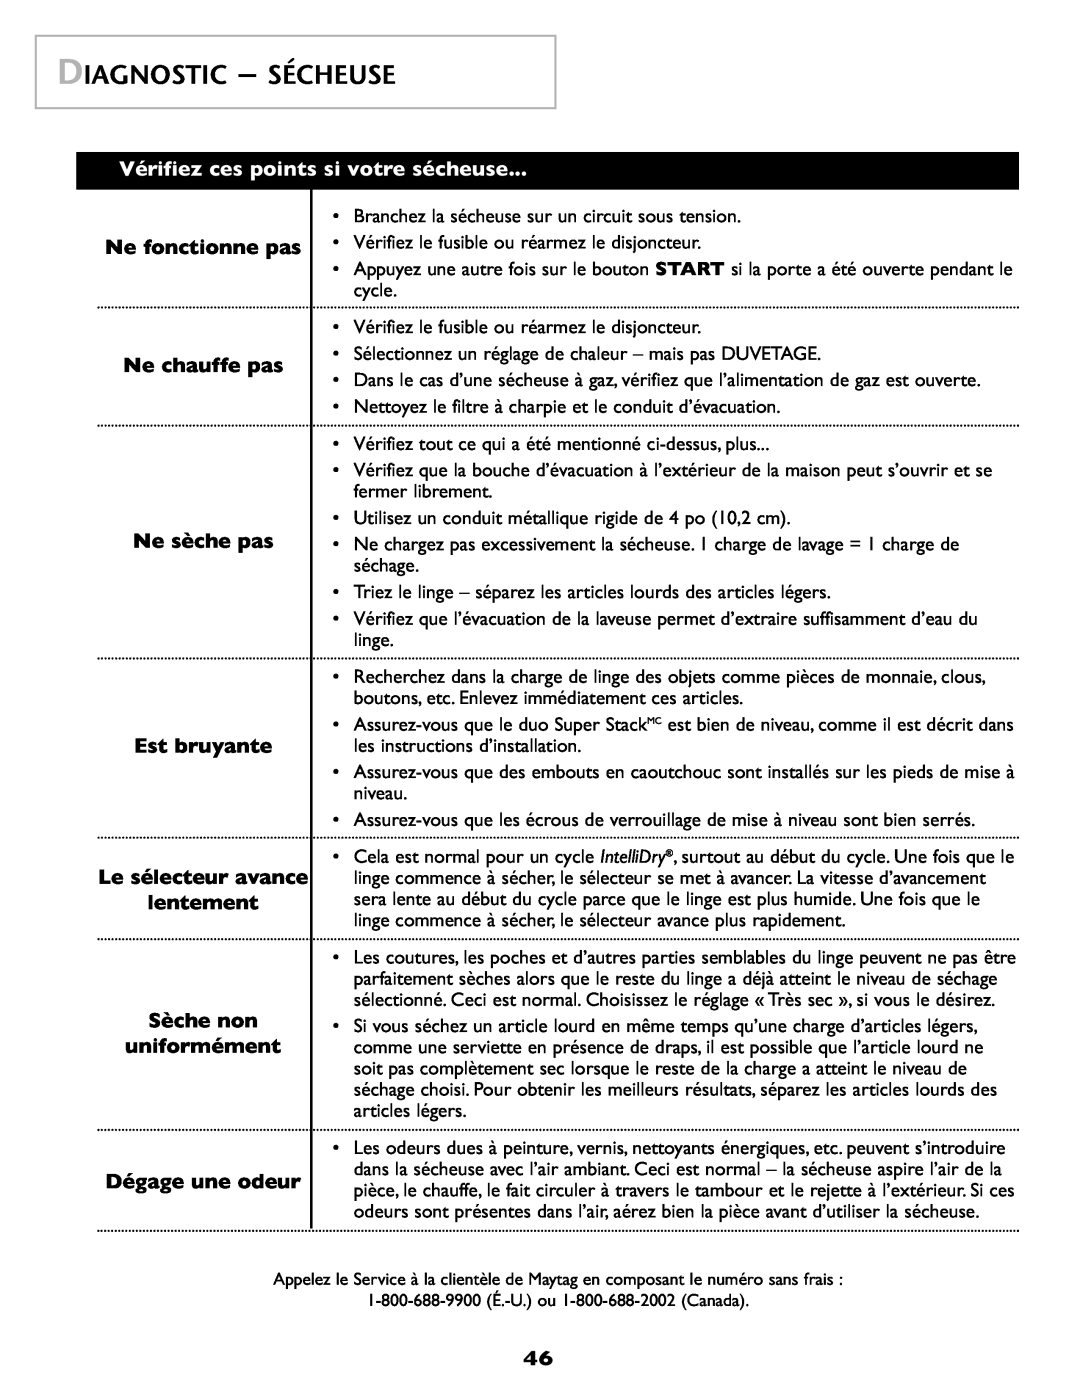 Maytag SL-3 important safety instructions Diagnostic - Sécheuse, Vérifiez ces points si votre sécheuse 